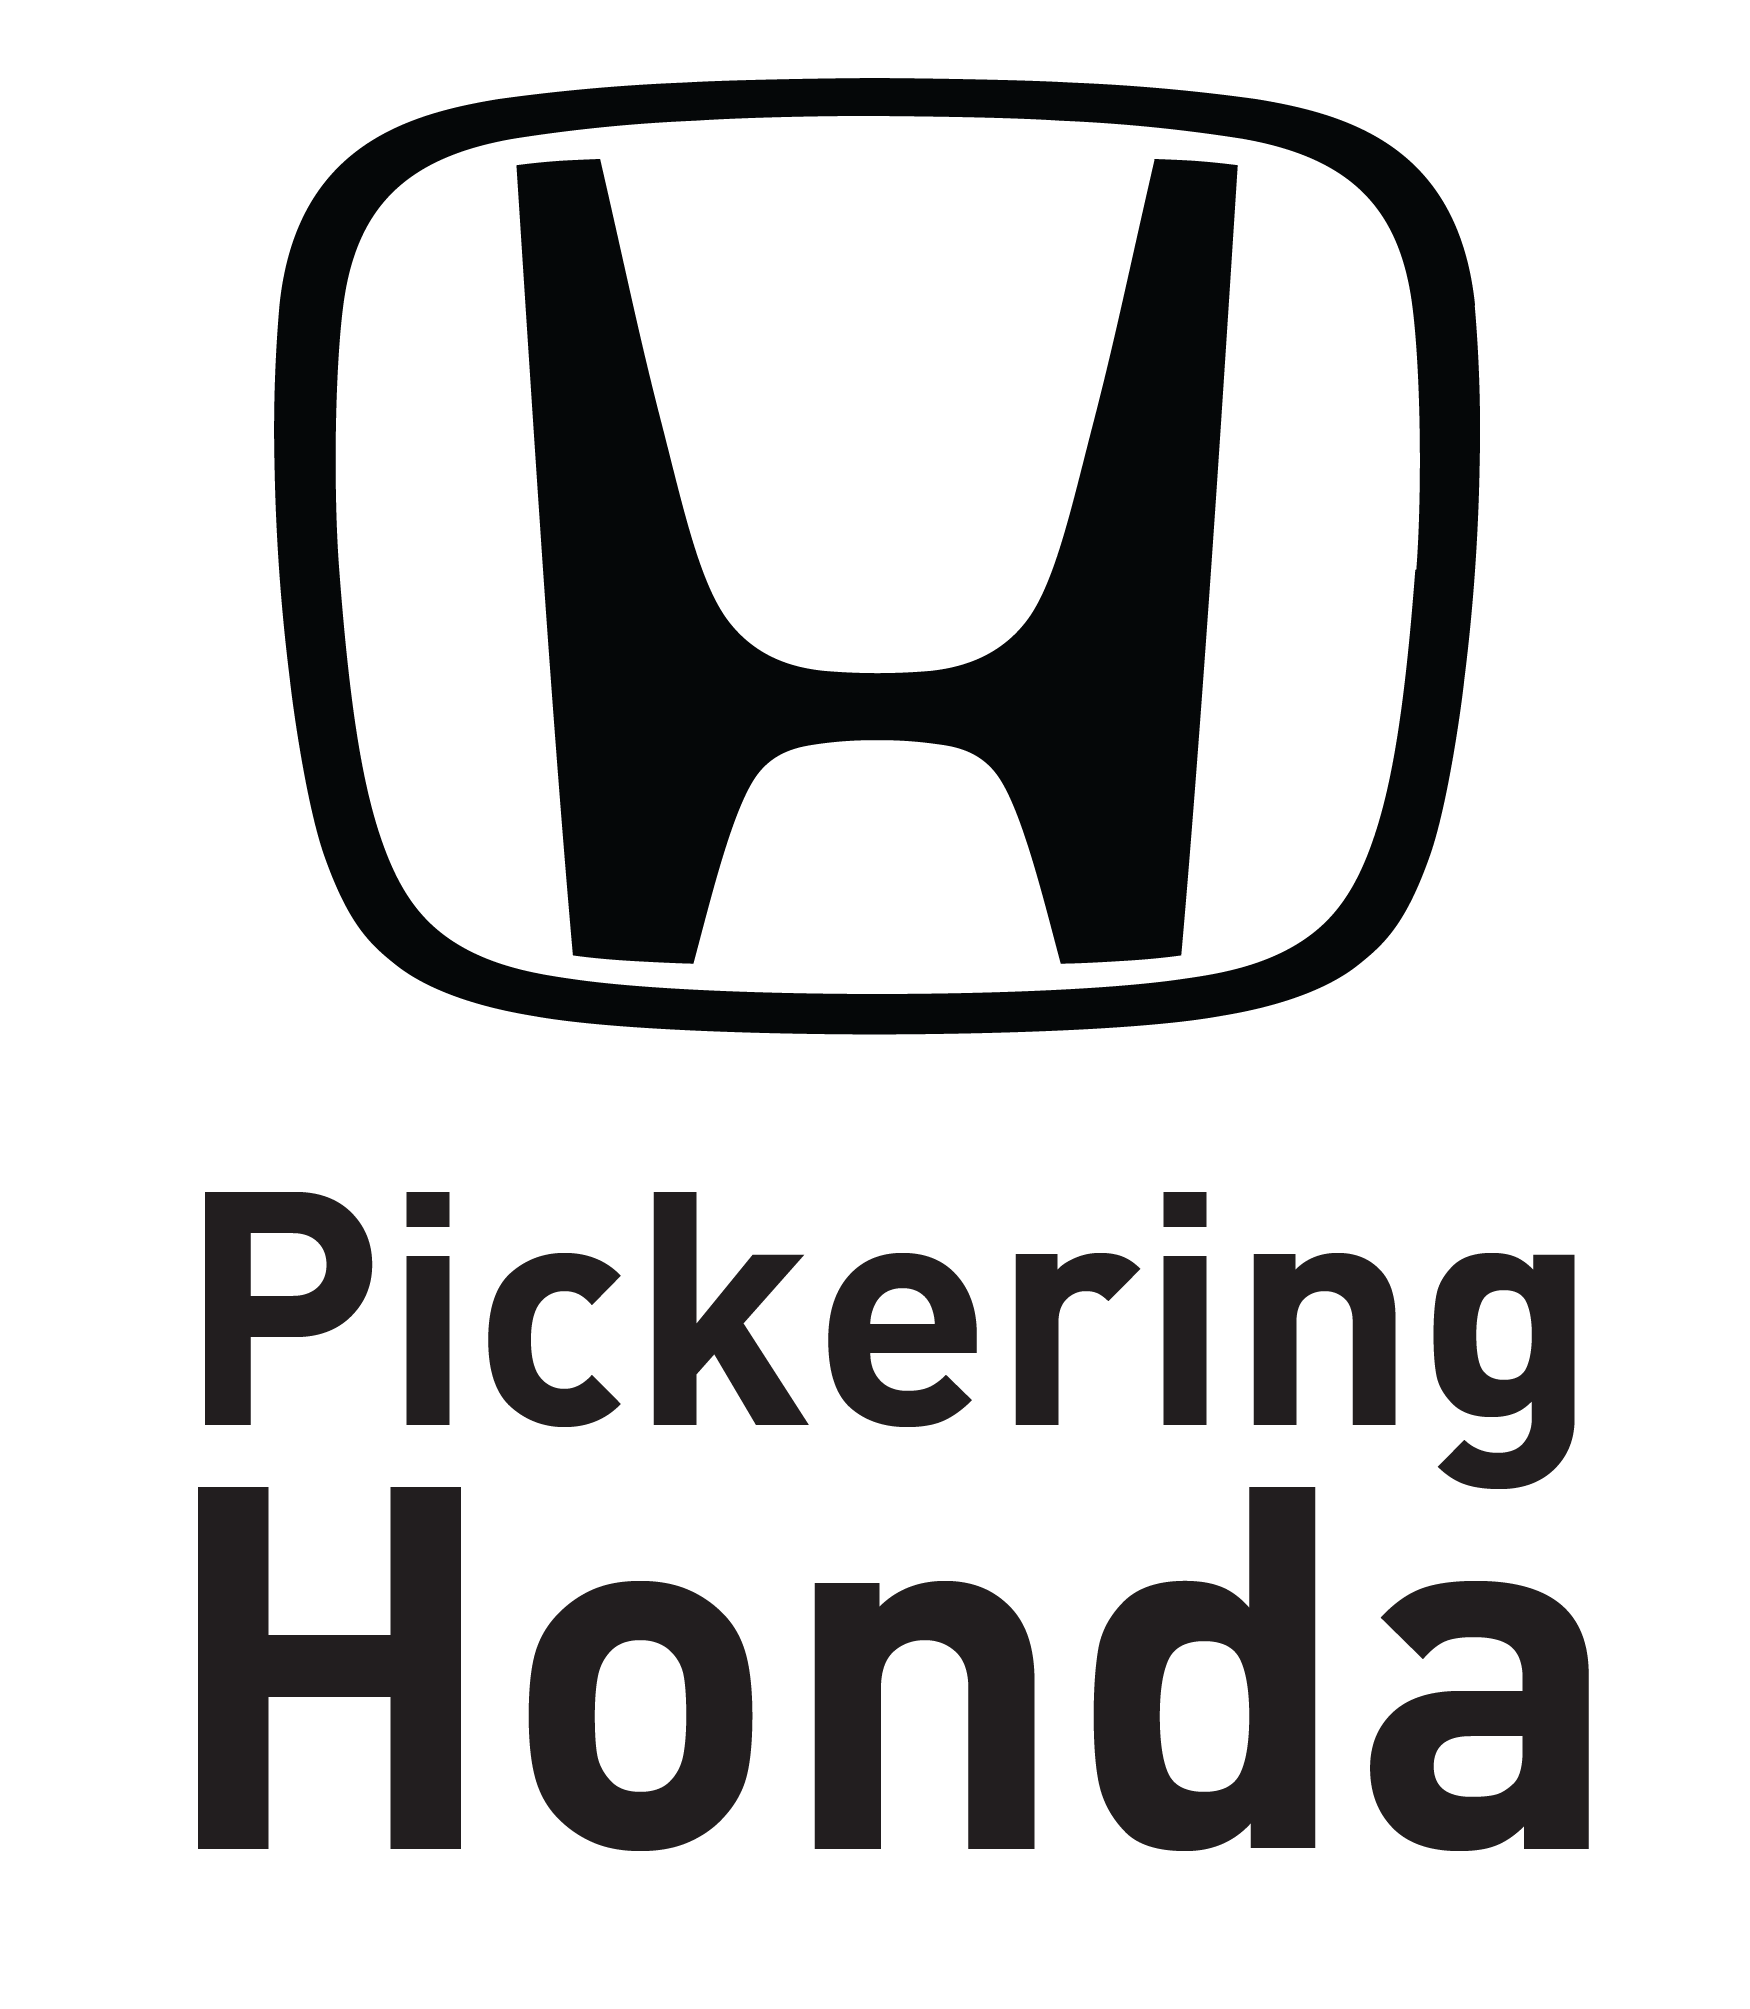 Pickering Honda logo